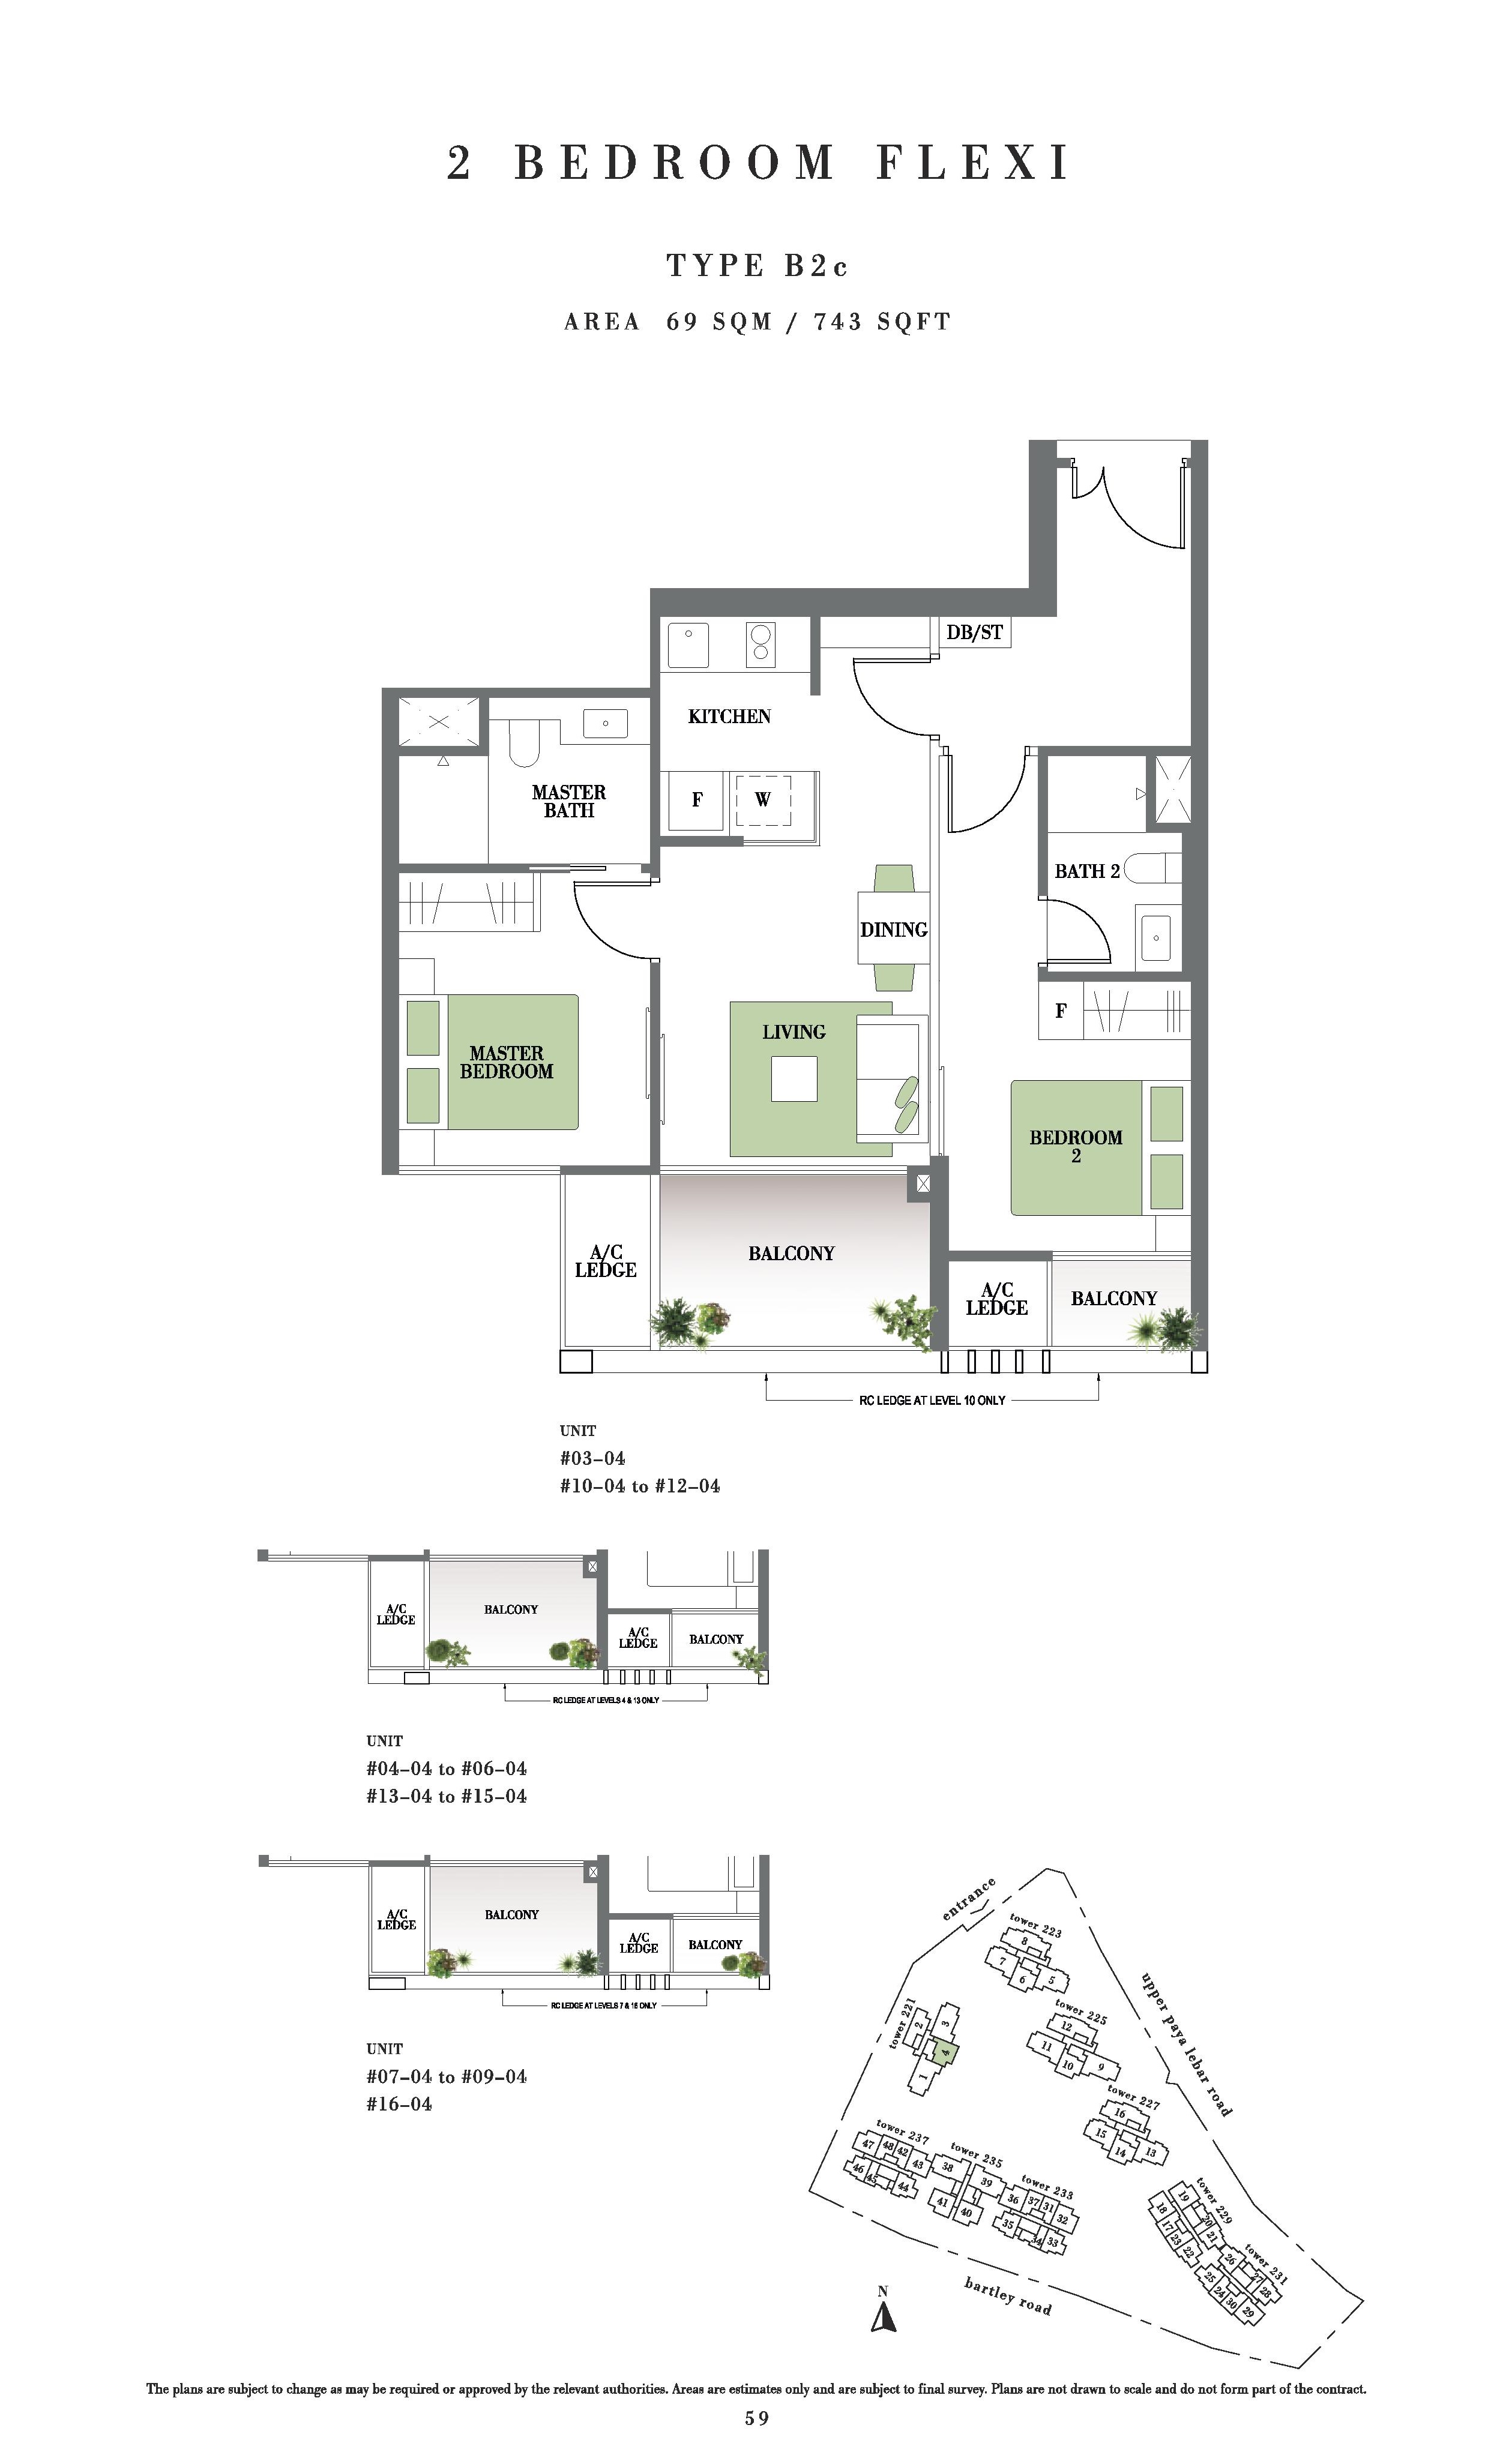 Botanique @ Bartley 2 Bedroom Flexi Floor Plans Type B2c